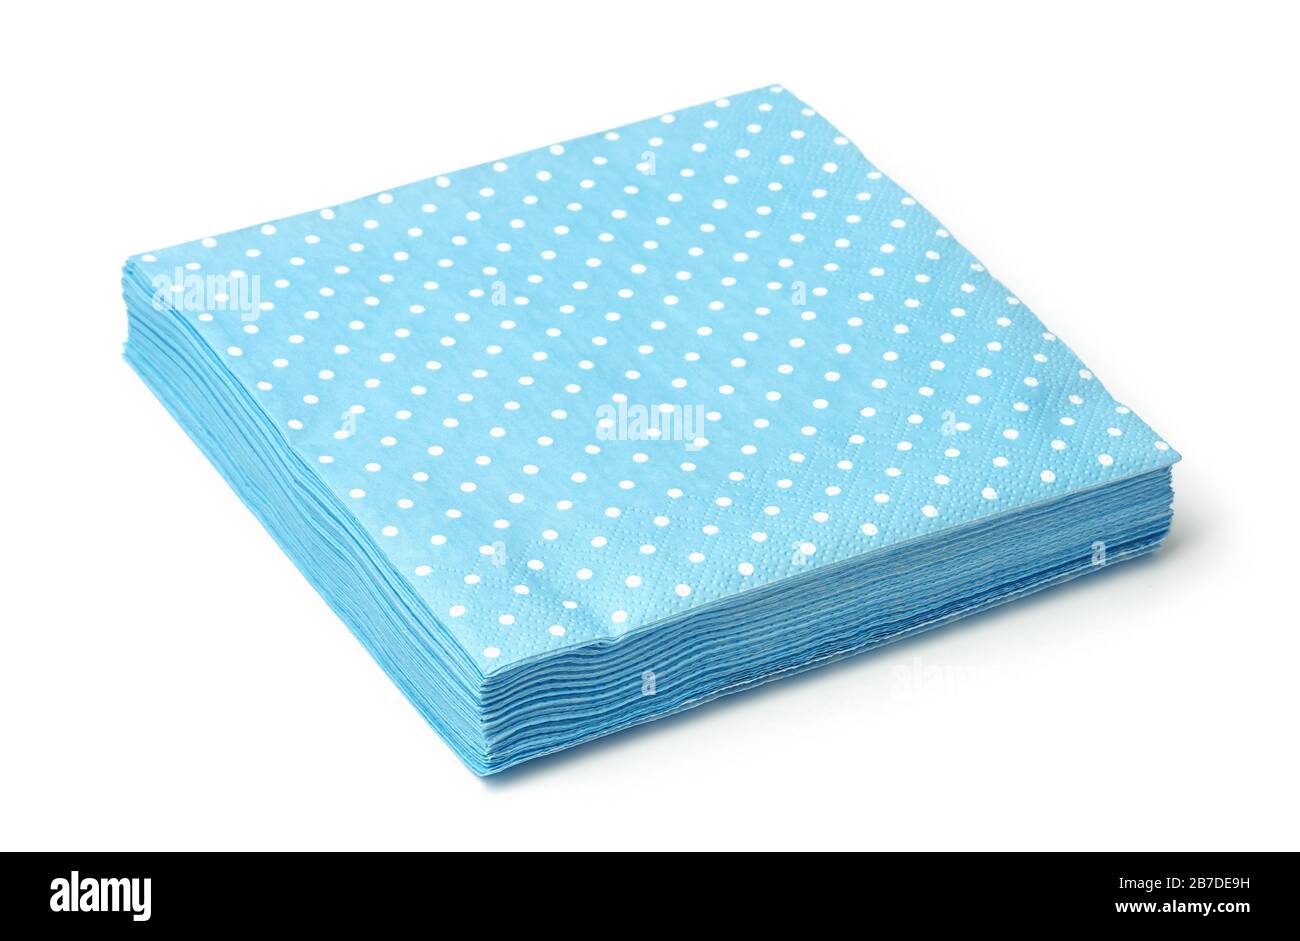 Pile de serviettes en pointillés bleus isolées sur blanc Banque D'Images